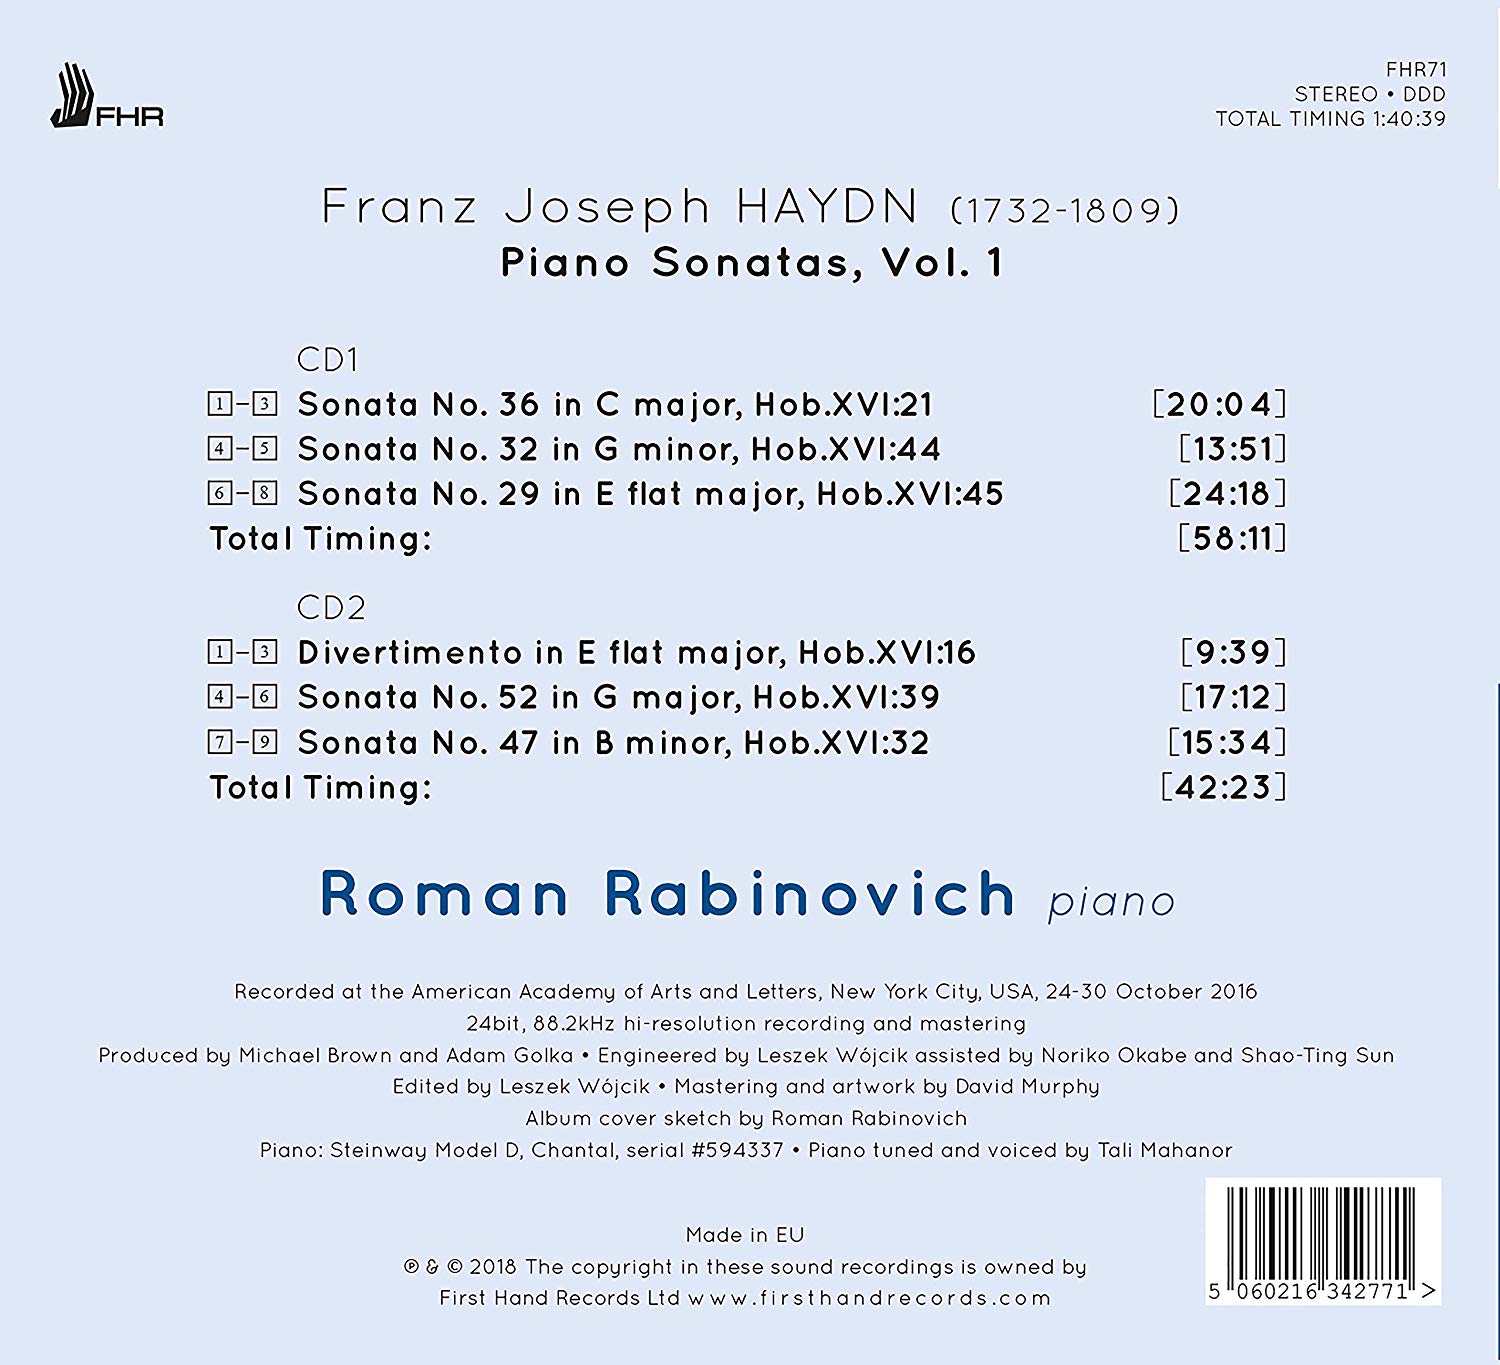 Pietro Scarpini 부조니: 피아노 협주곡 (Busoni: Piano Concerto No.39)